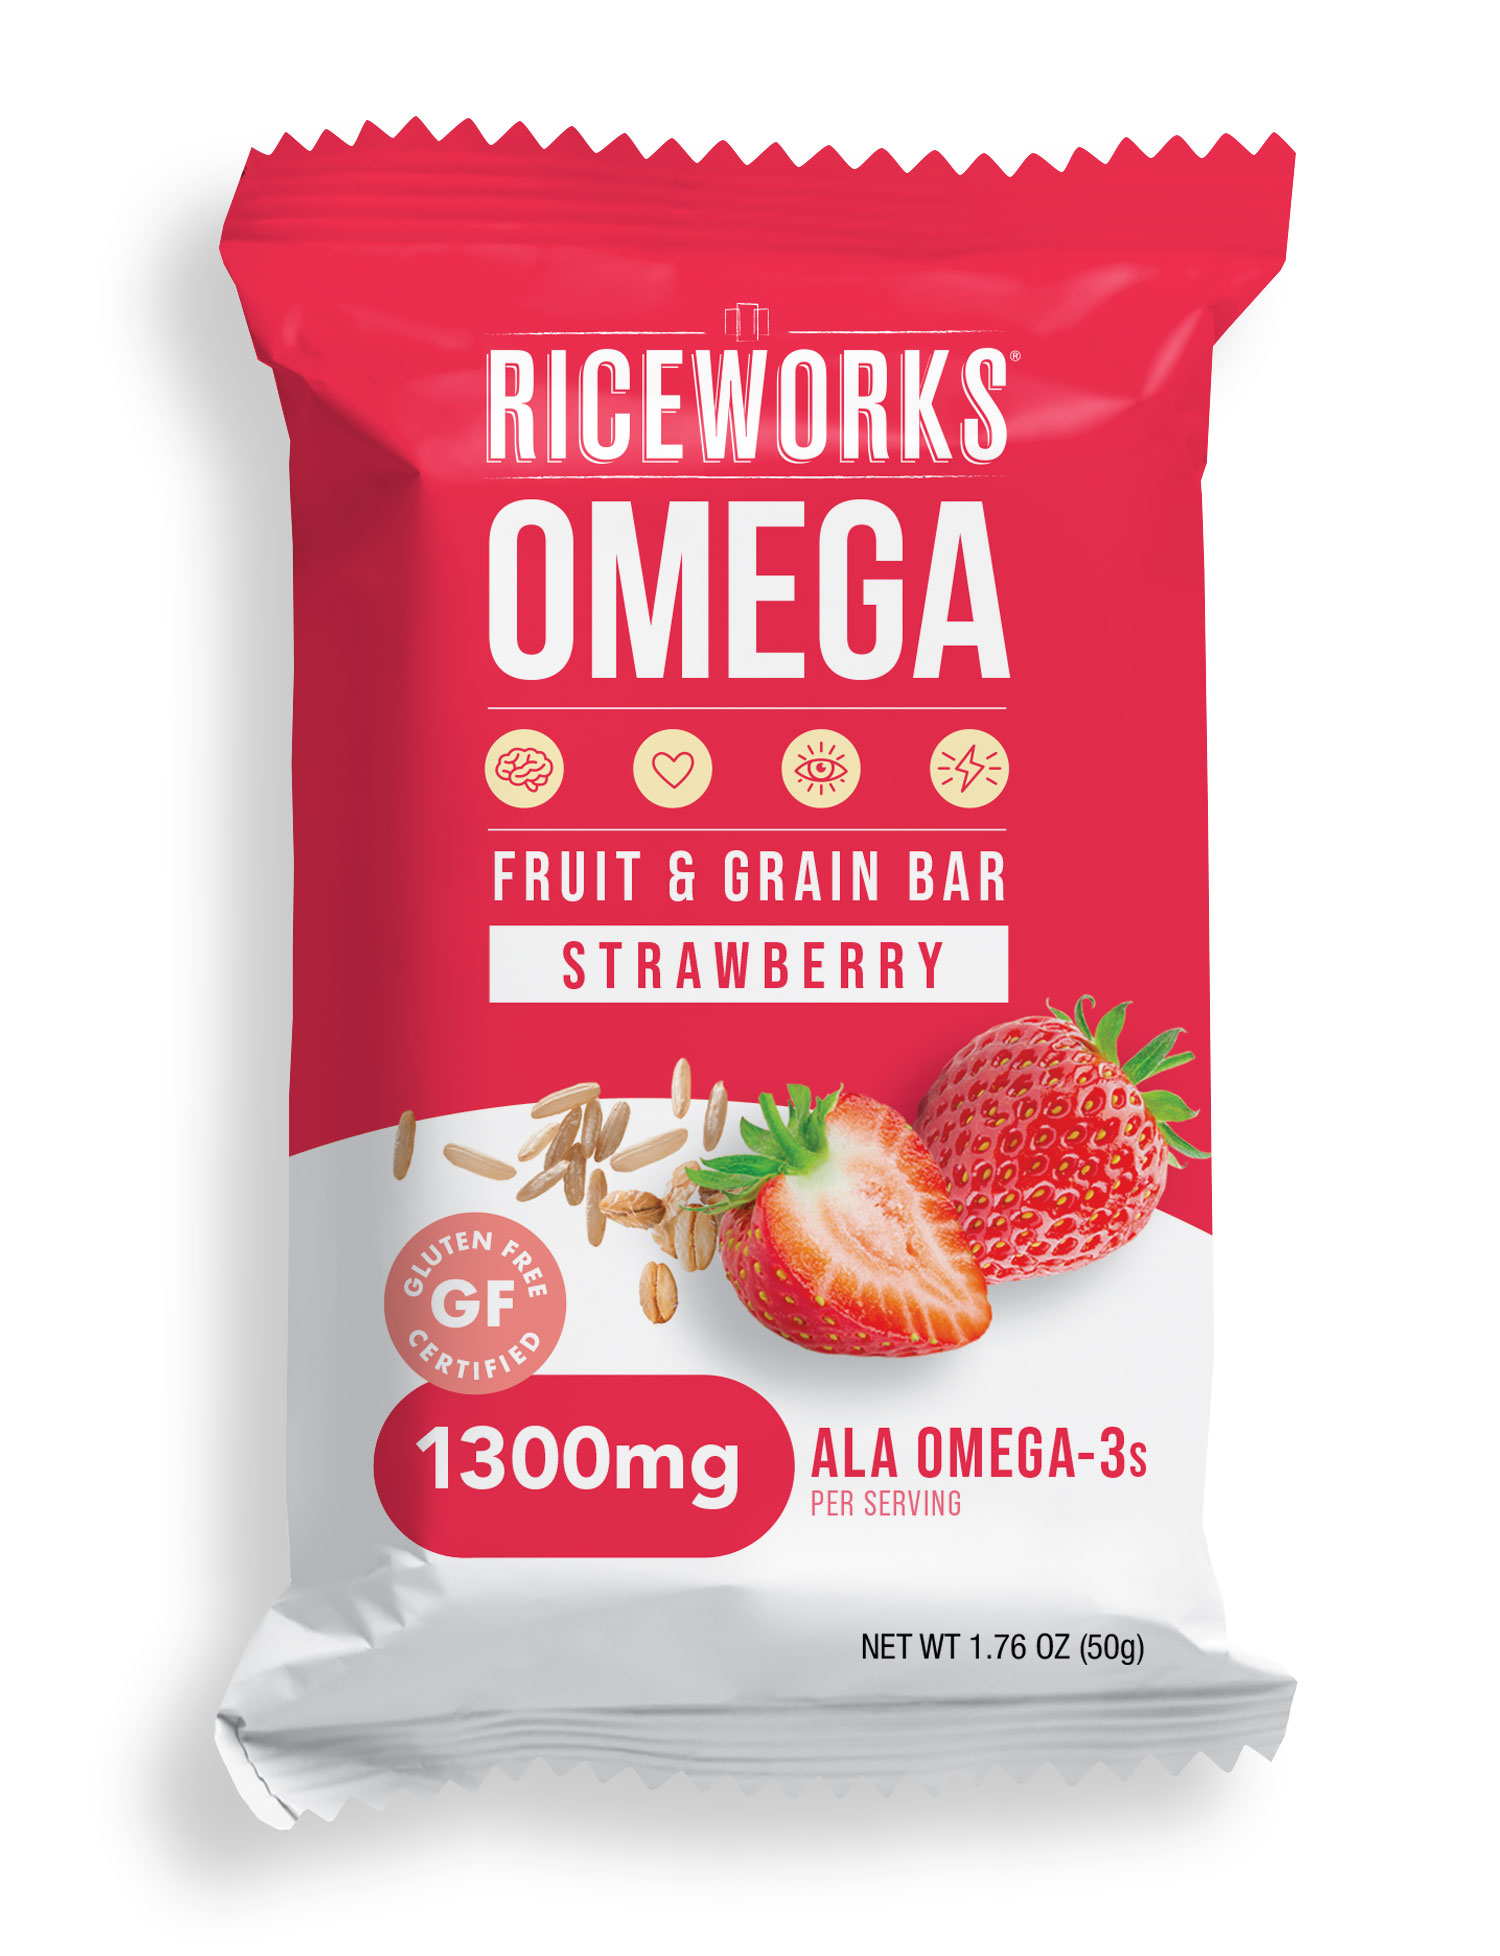 Riceworks Omega Strawberry Baked Multigrain Omega-3 Fruit Bar